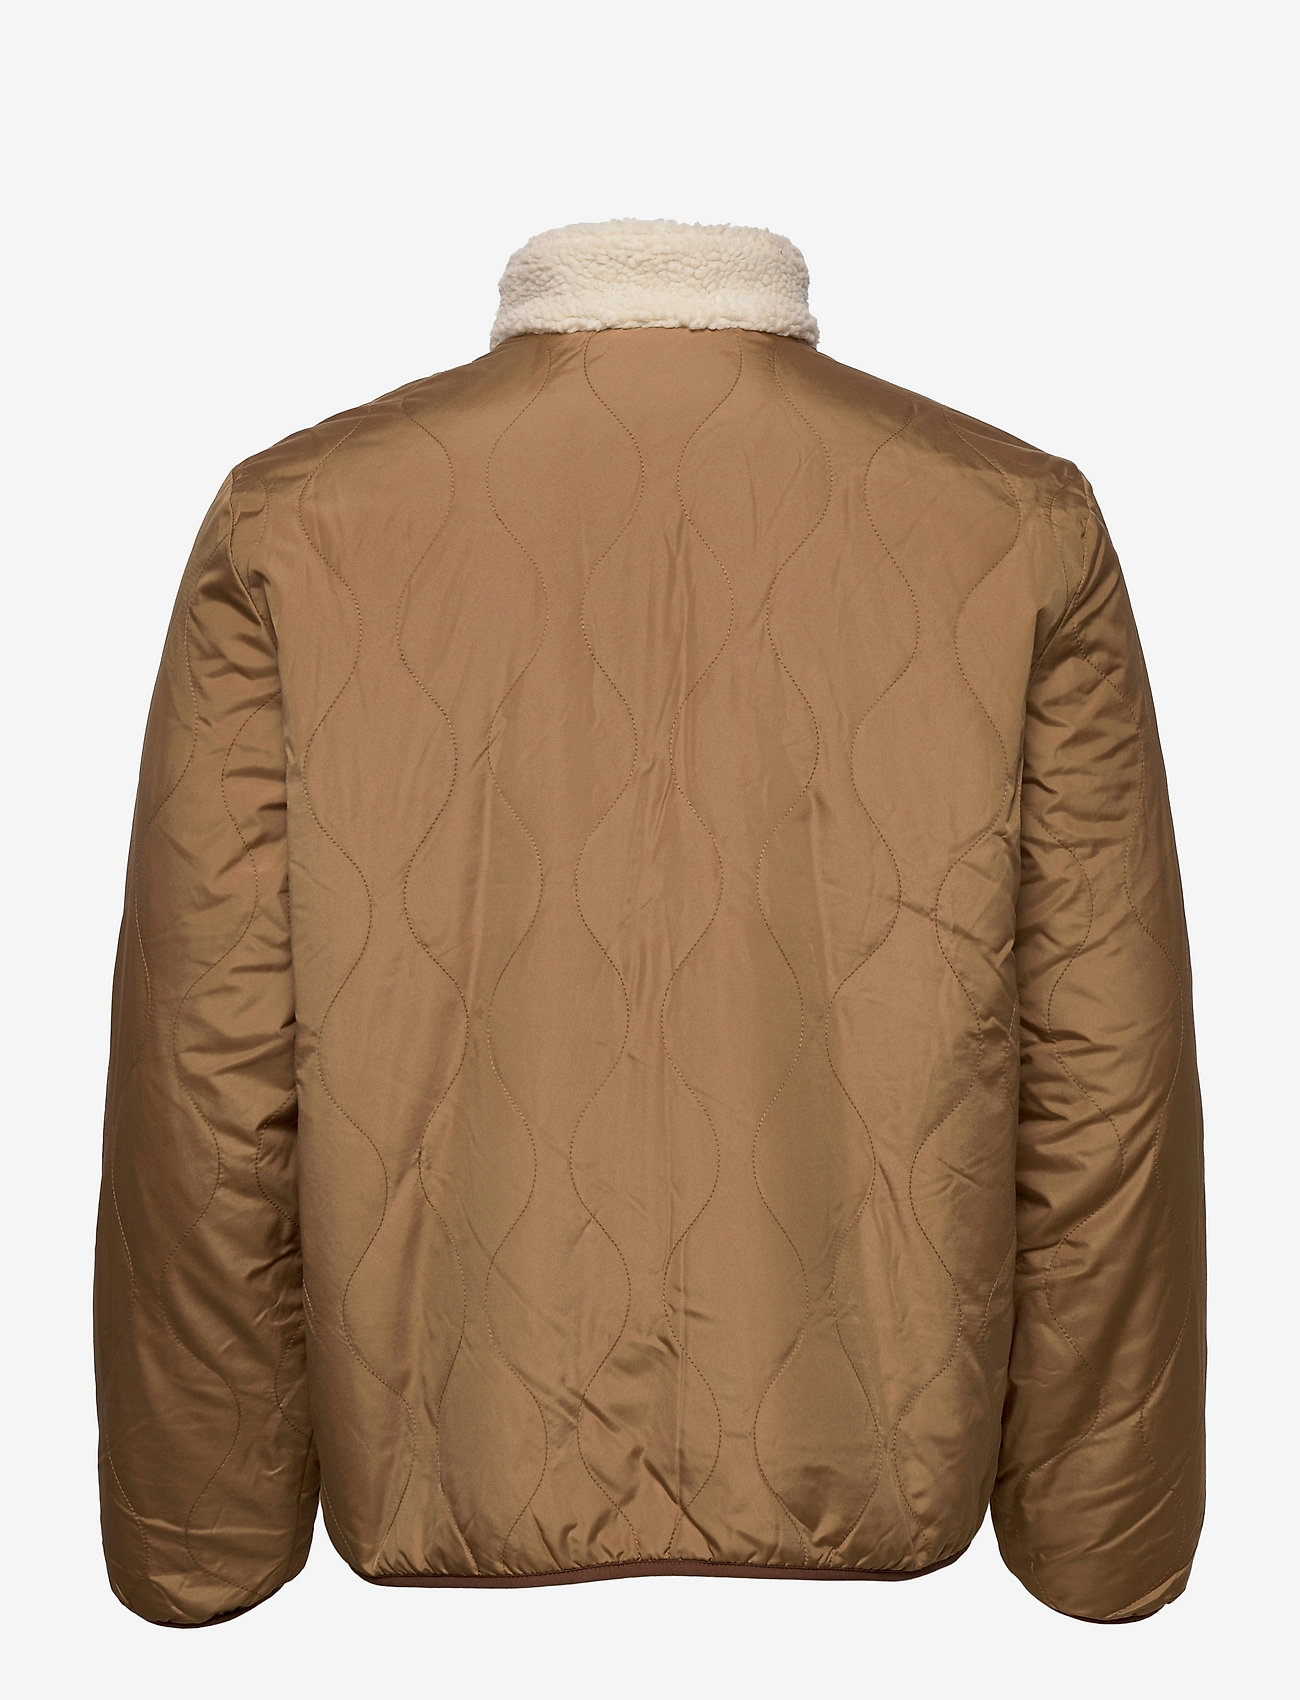 GAP Reversible Fleece Jacket - Mid layer jackets | Boozt.com